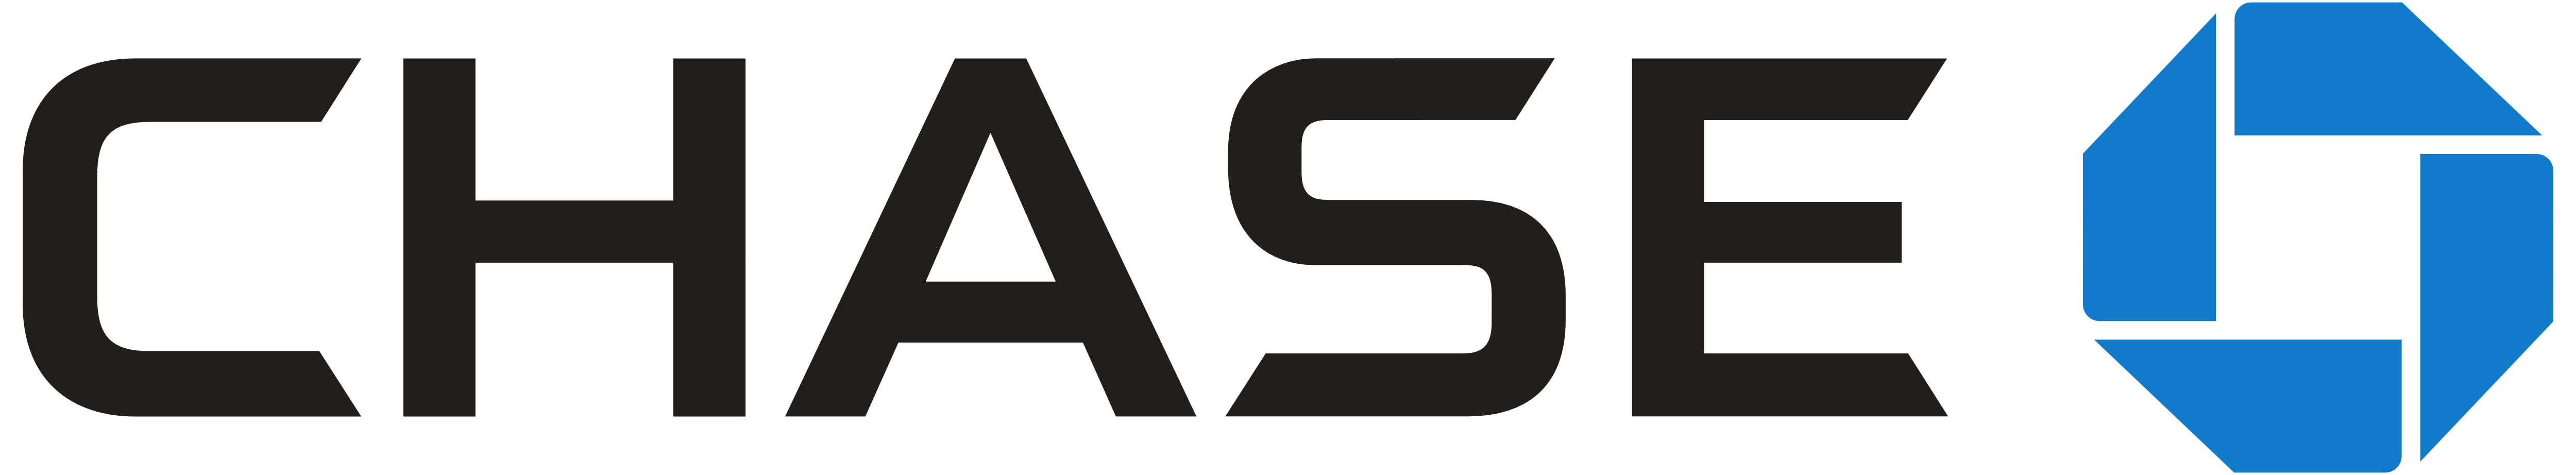 Chase Bank – Logos Download